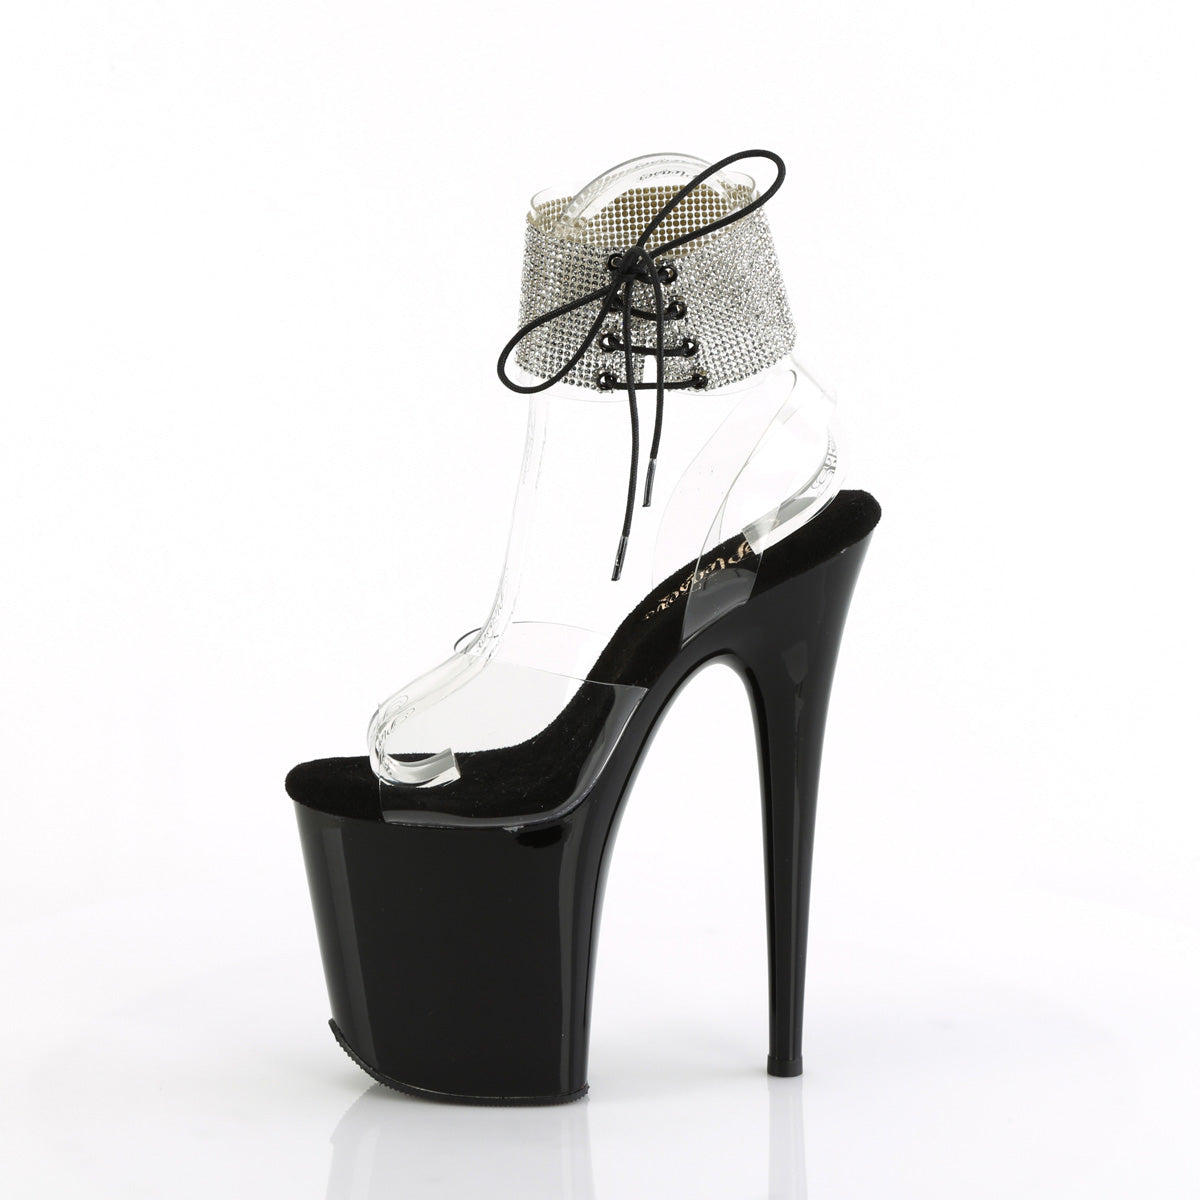 FLAMINGO-891-2RS Pleaser Rhinestone Cuff 8 Inch High heel Black Stripper Shoes